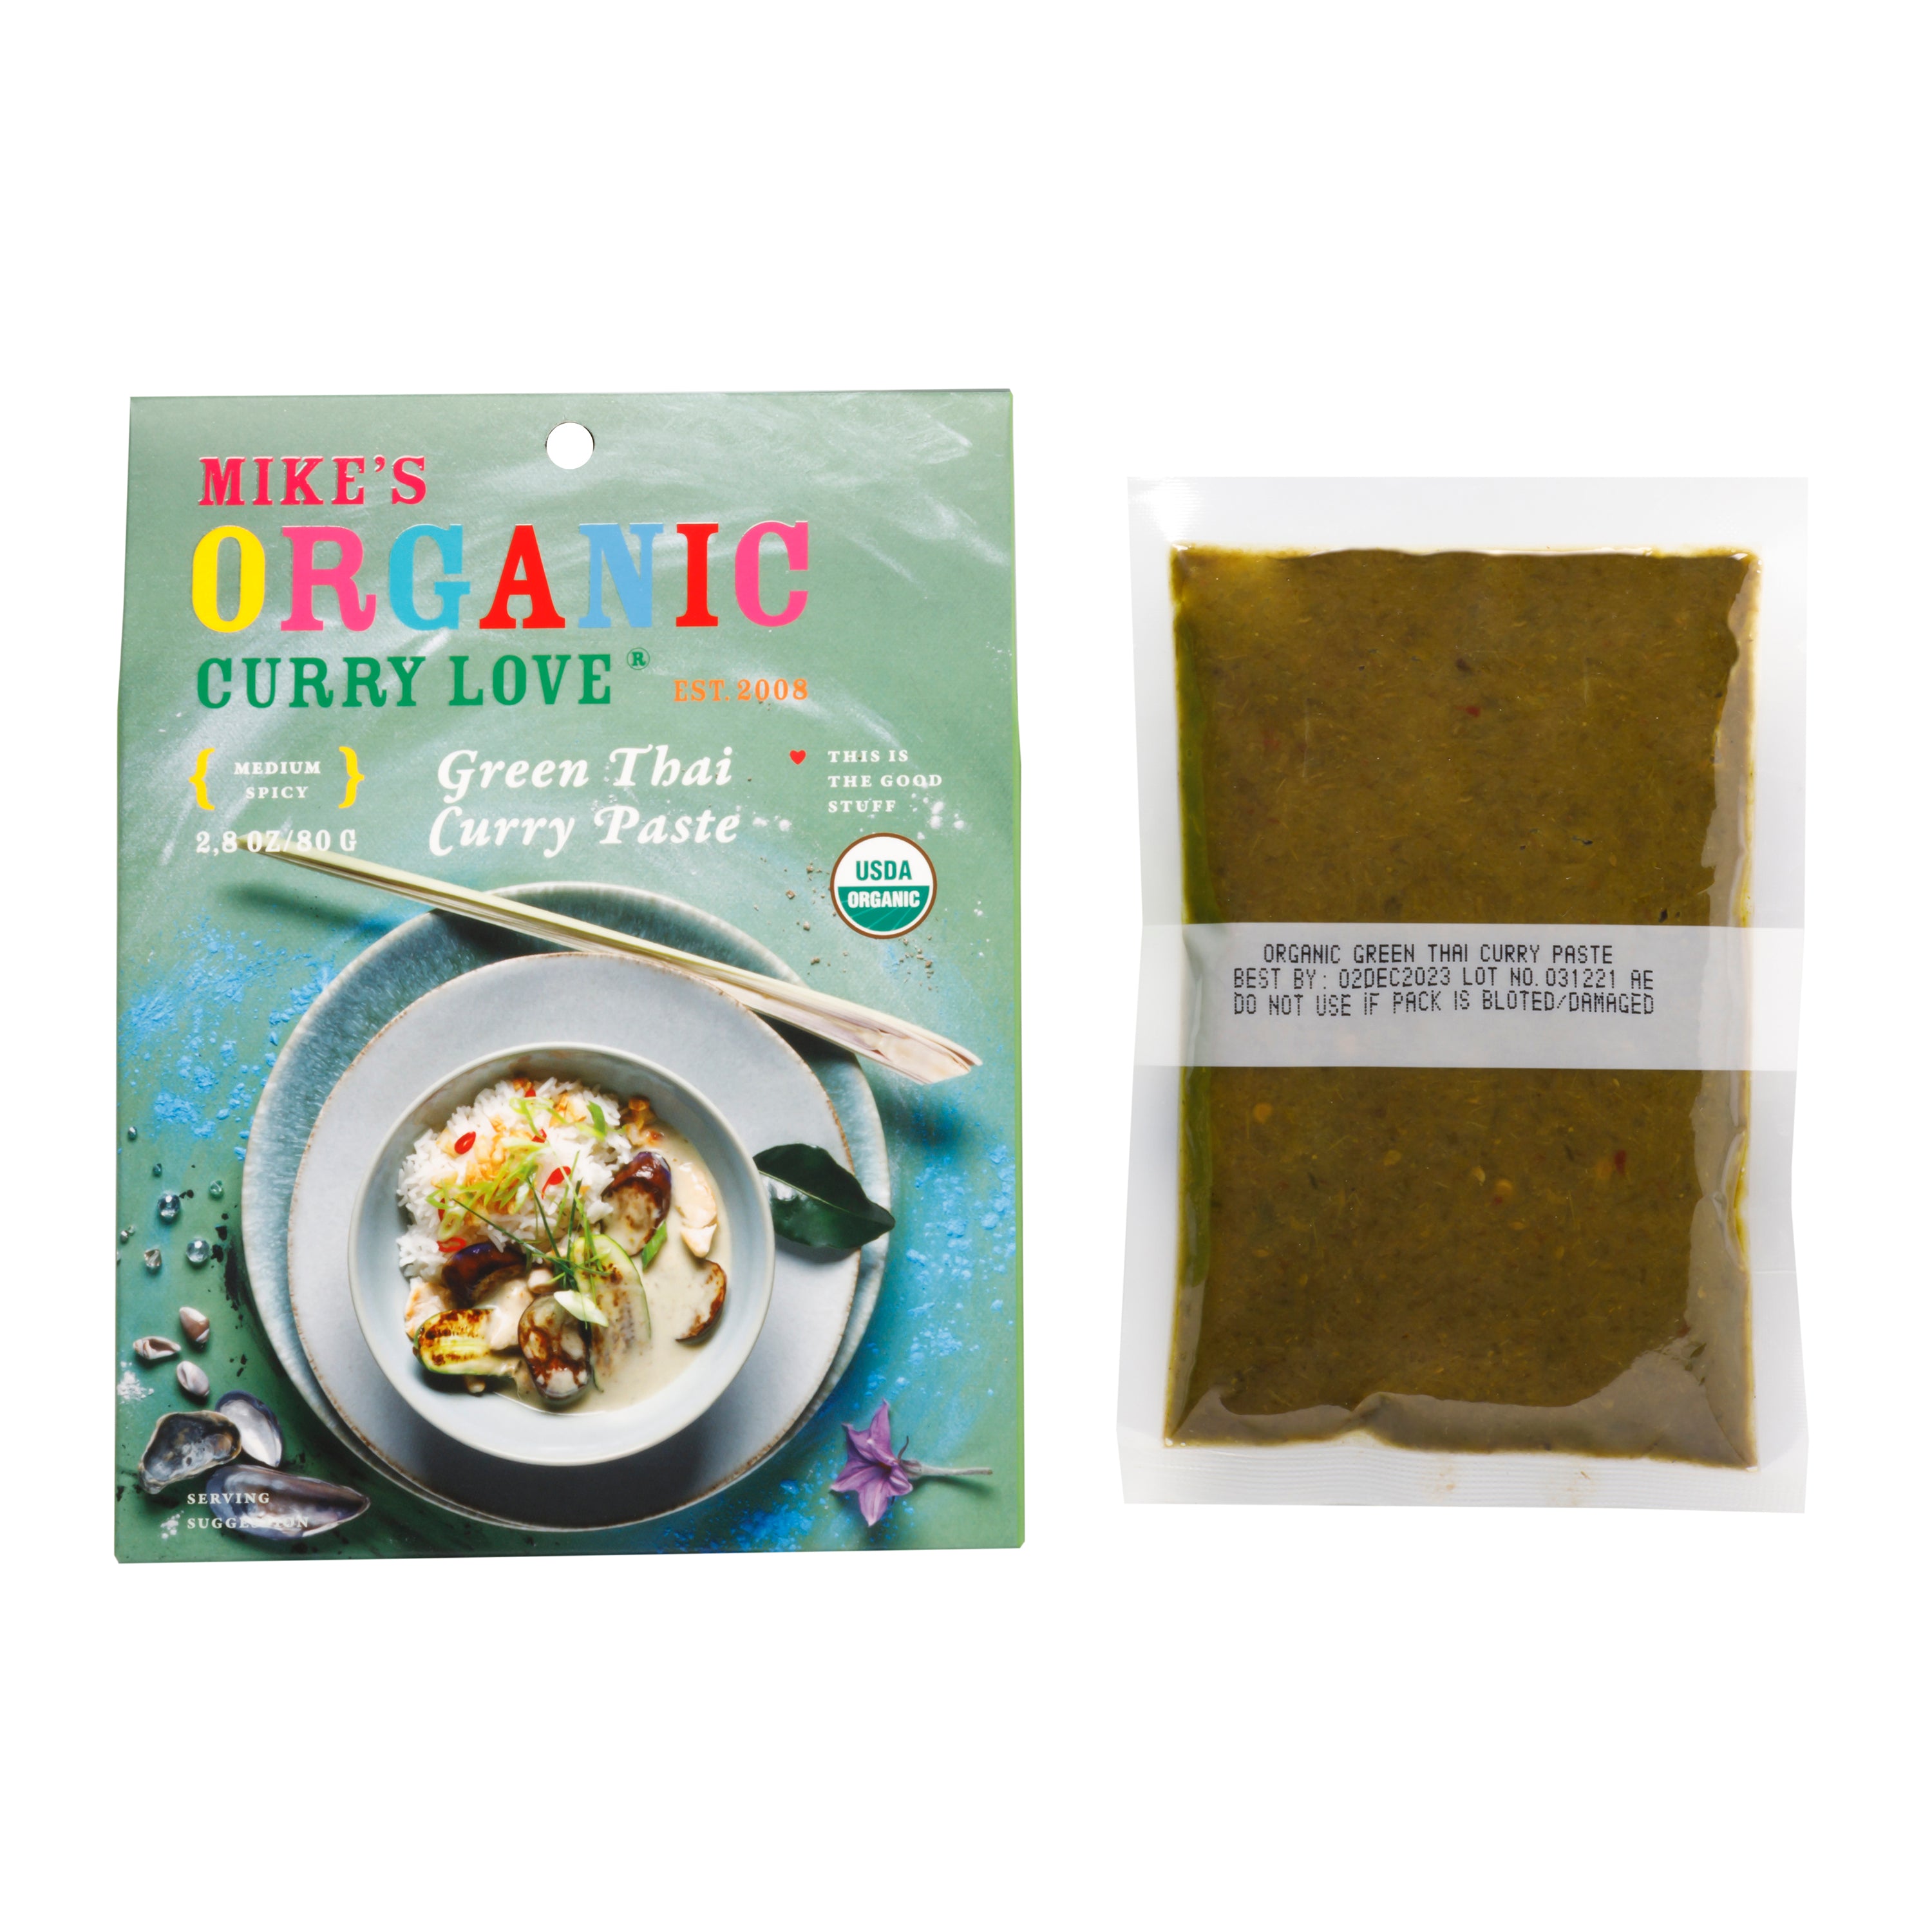 Green Thai Curry Paste -  1 x 2.8 oz